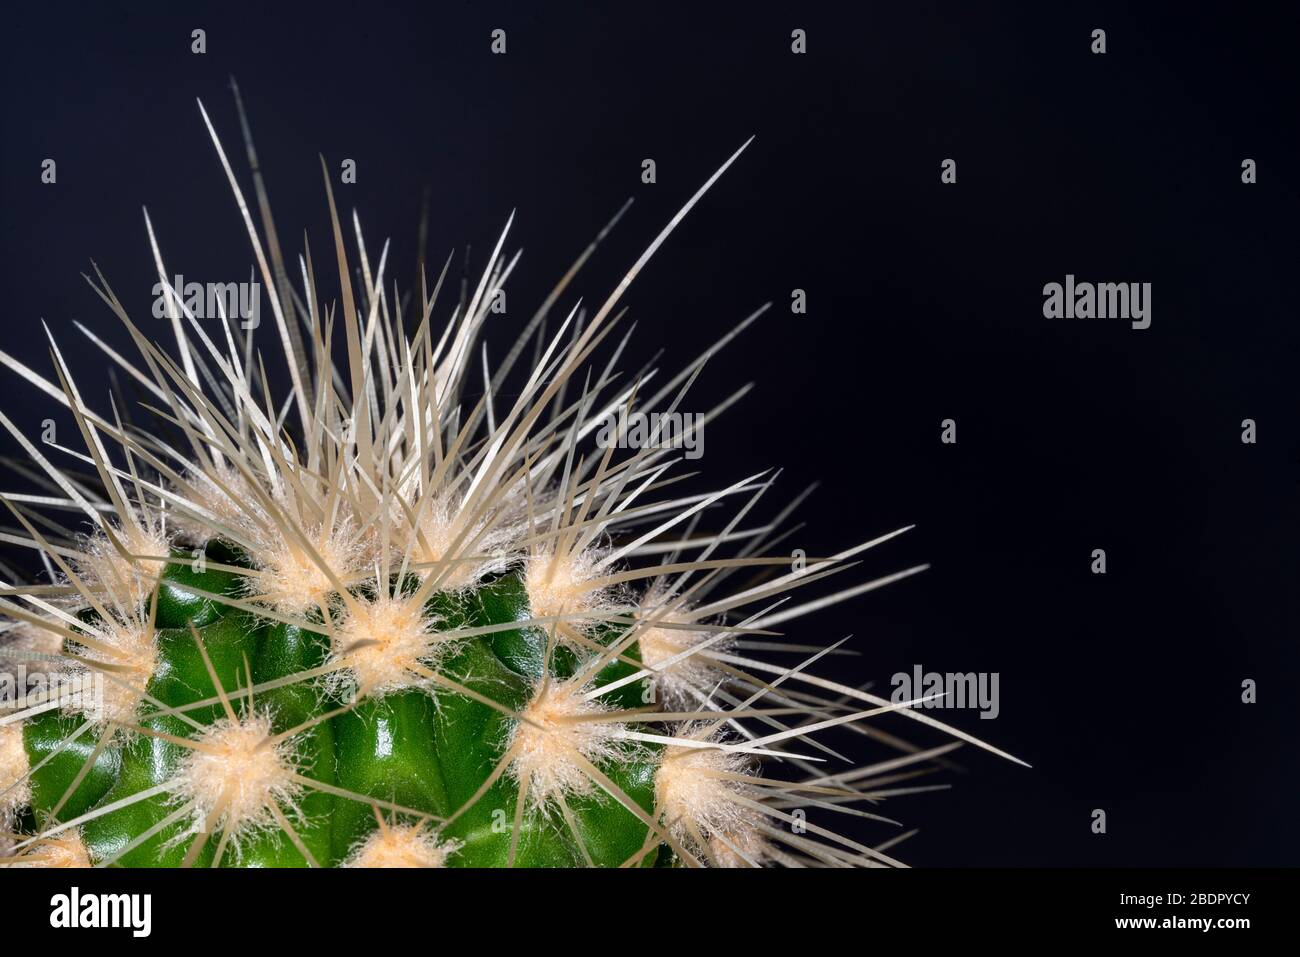 Cerca de un cactus muy espinoso, con agujas afiladas dañinas. Foto de stock